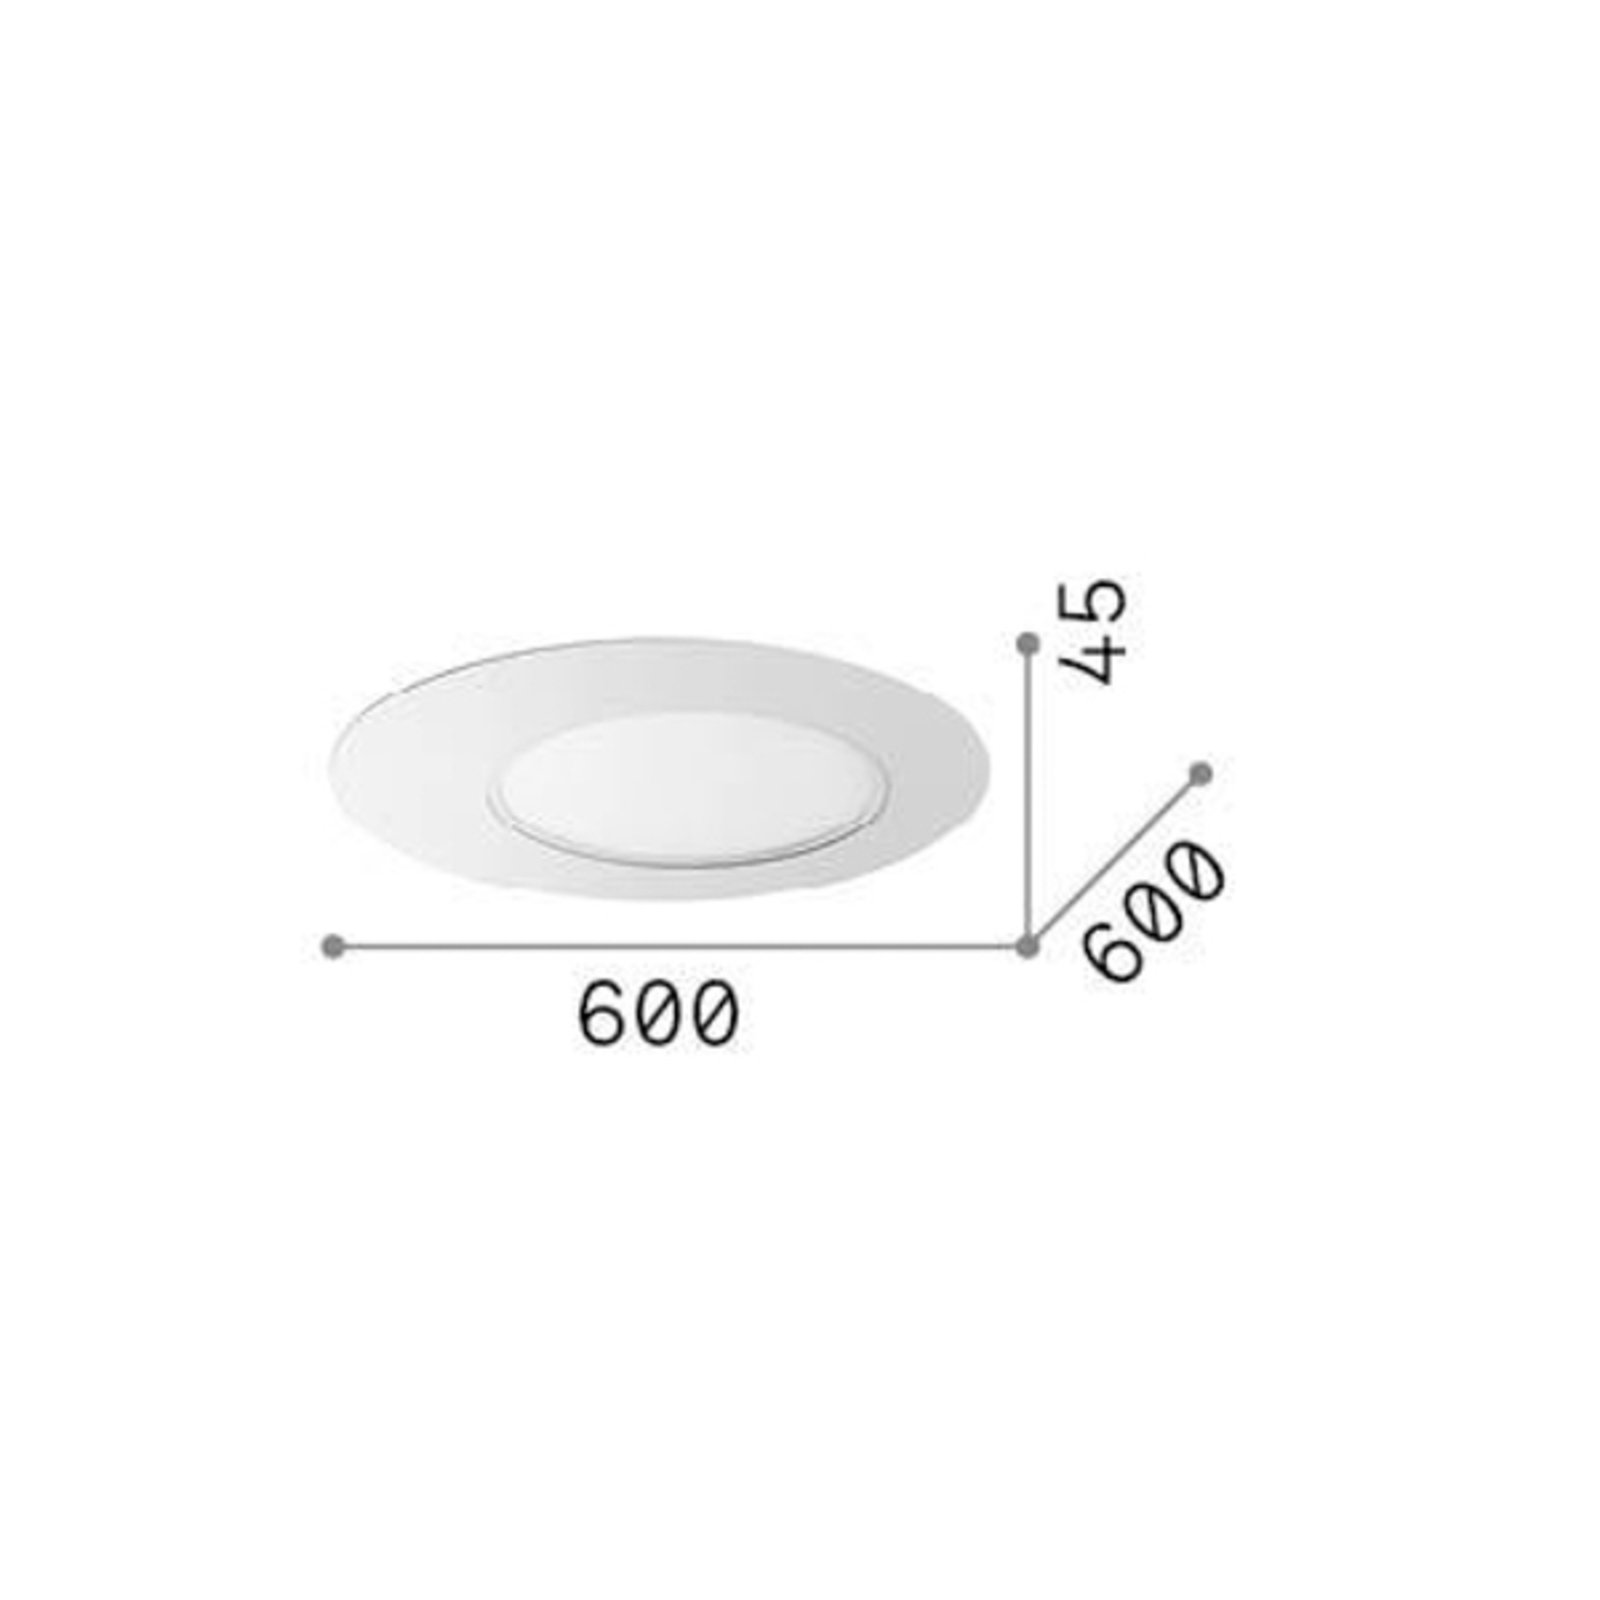 Ideal Lux LED-Deckenleuchte Iride, weiß, Ø 60 cm, Metall